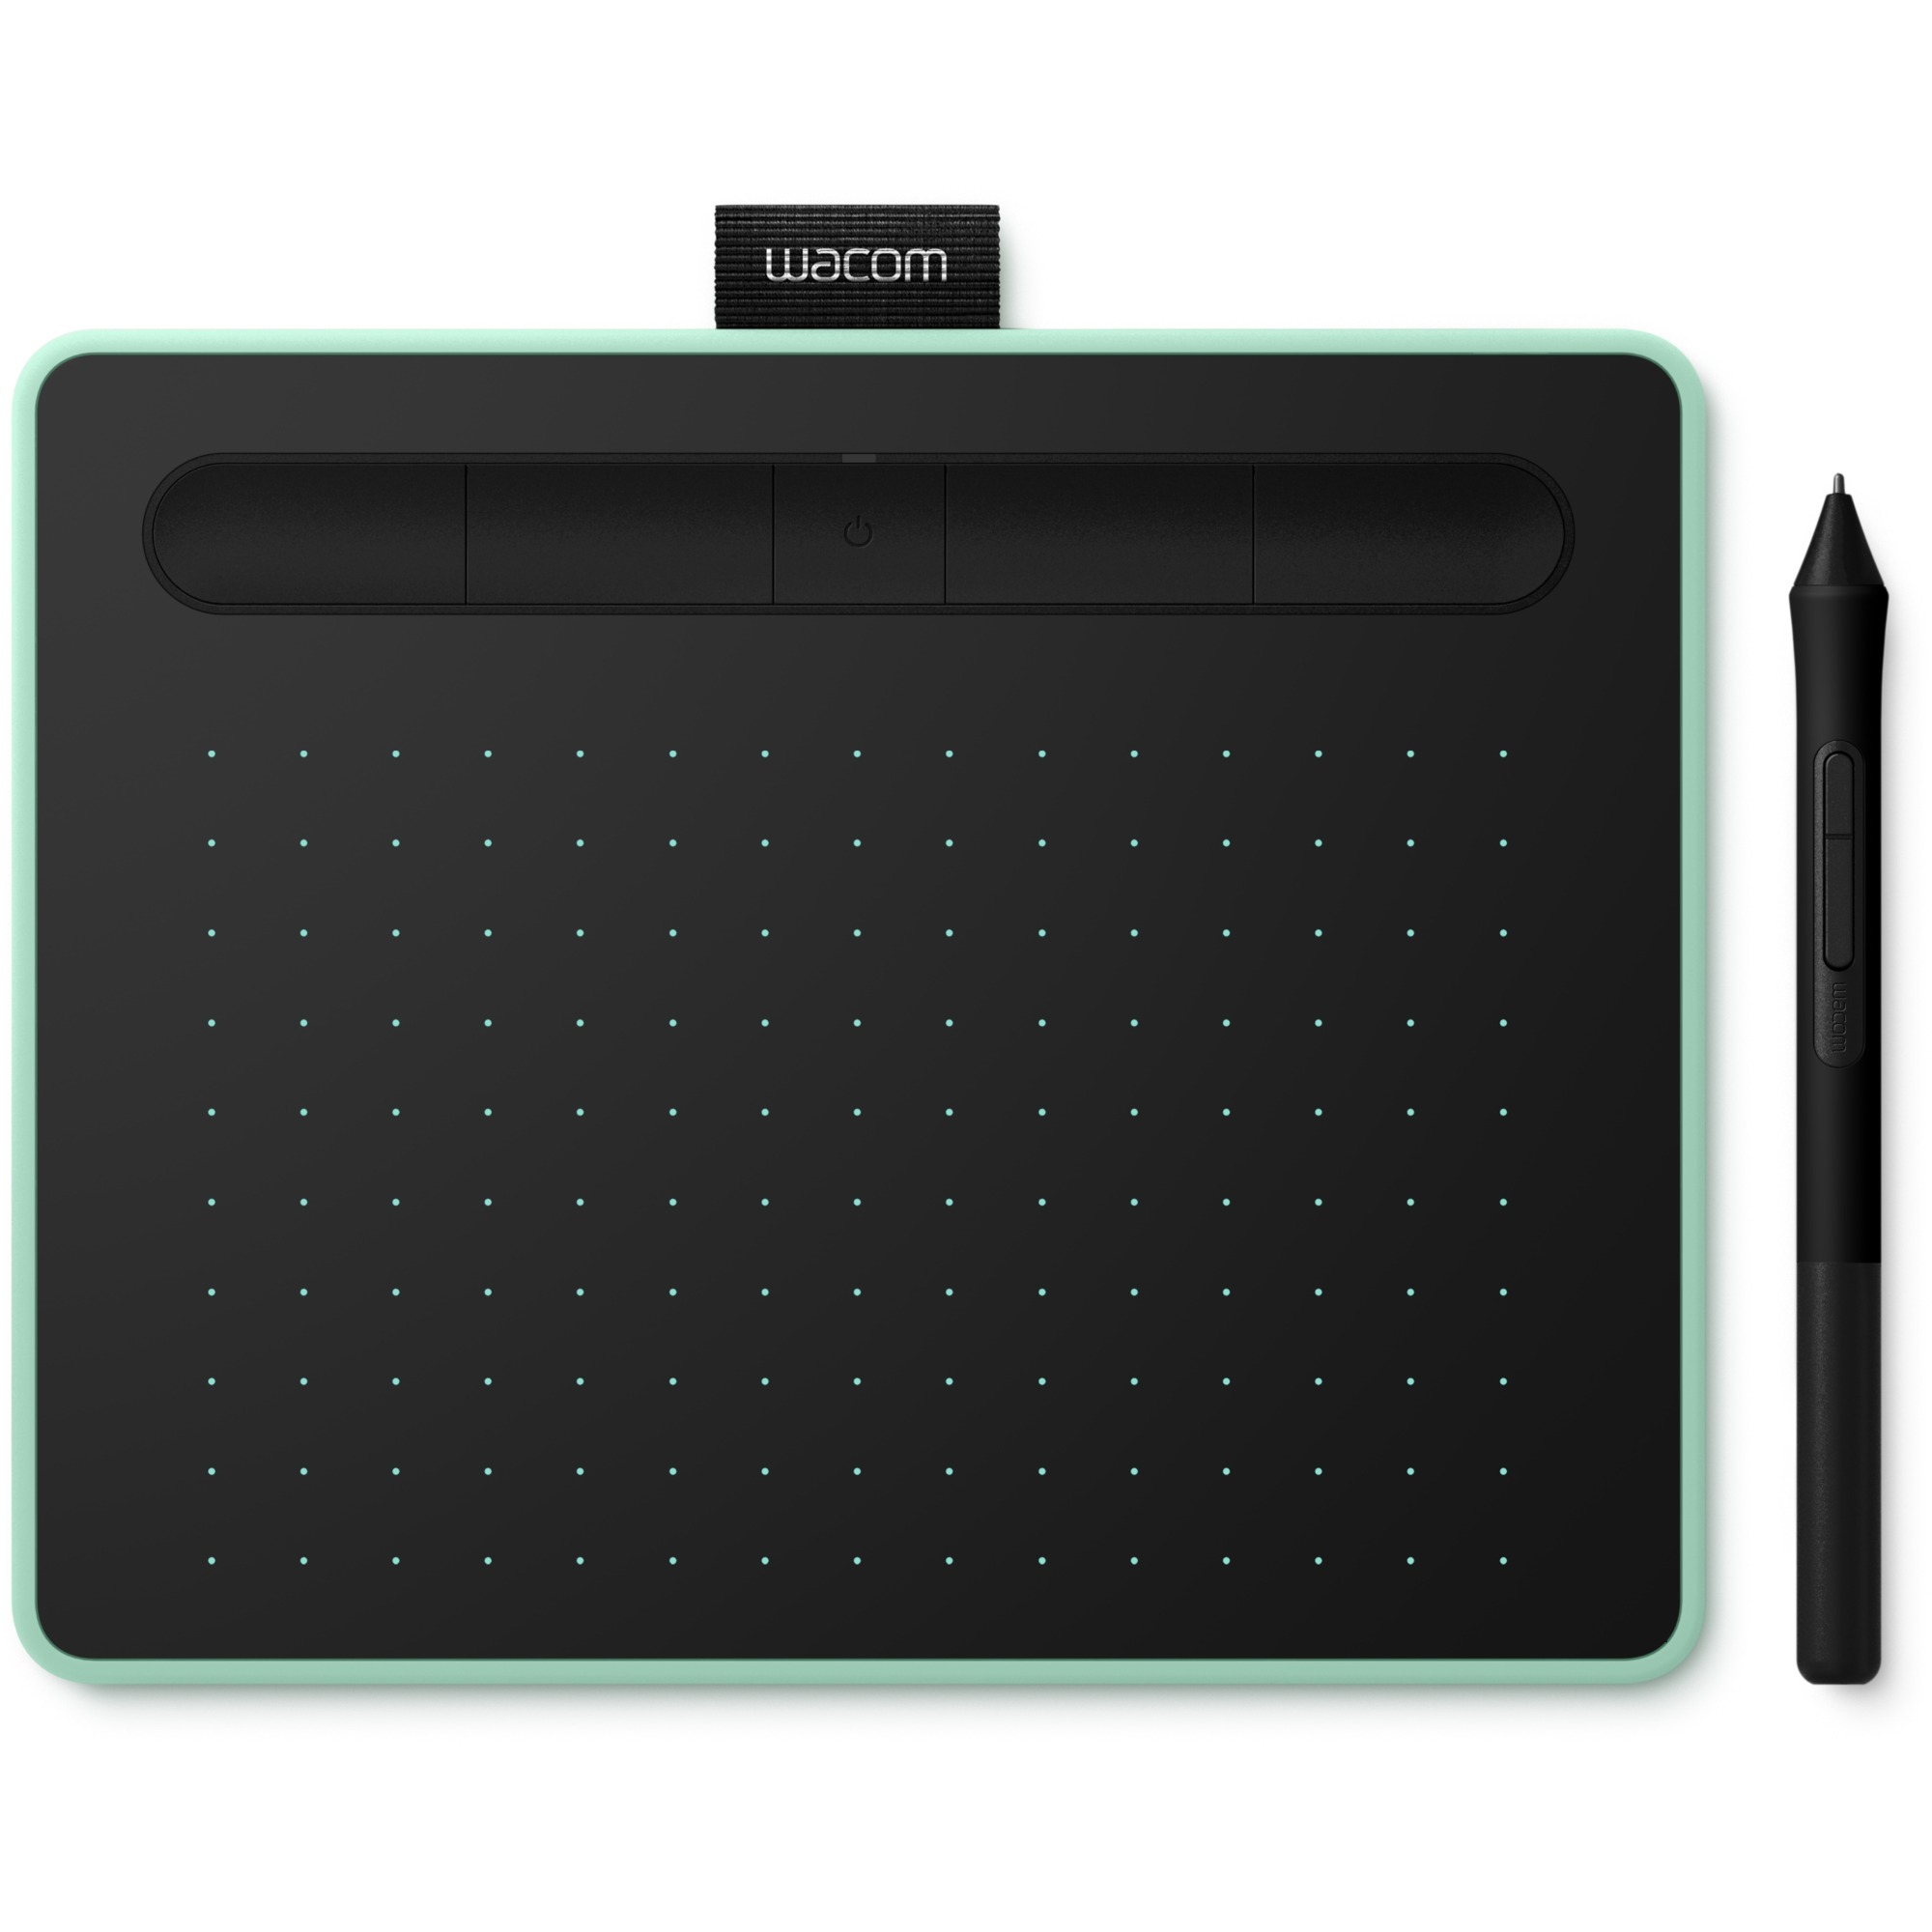 Image of Alternate - Intuos S mit Bluetooth, Grafiktablett online einkaufen bei Alternate